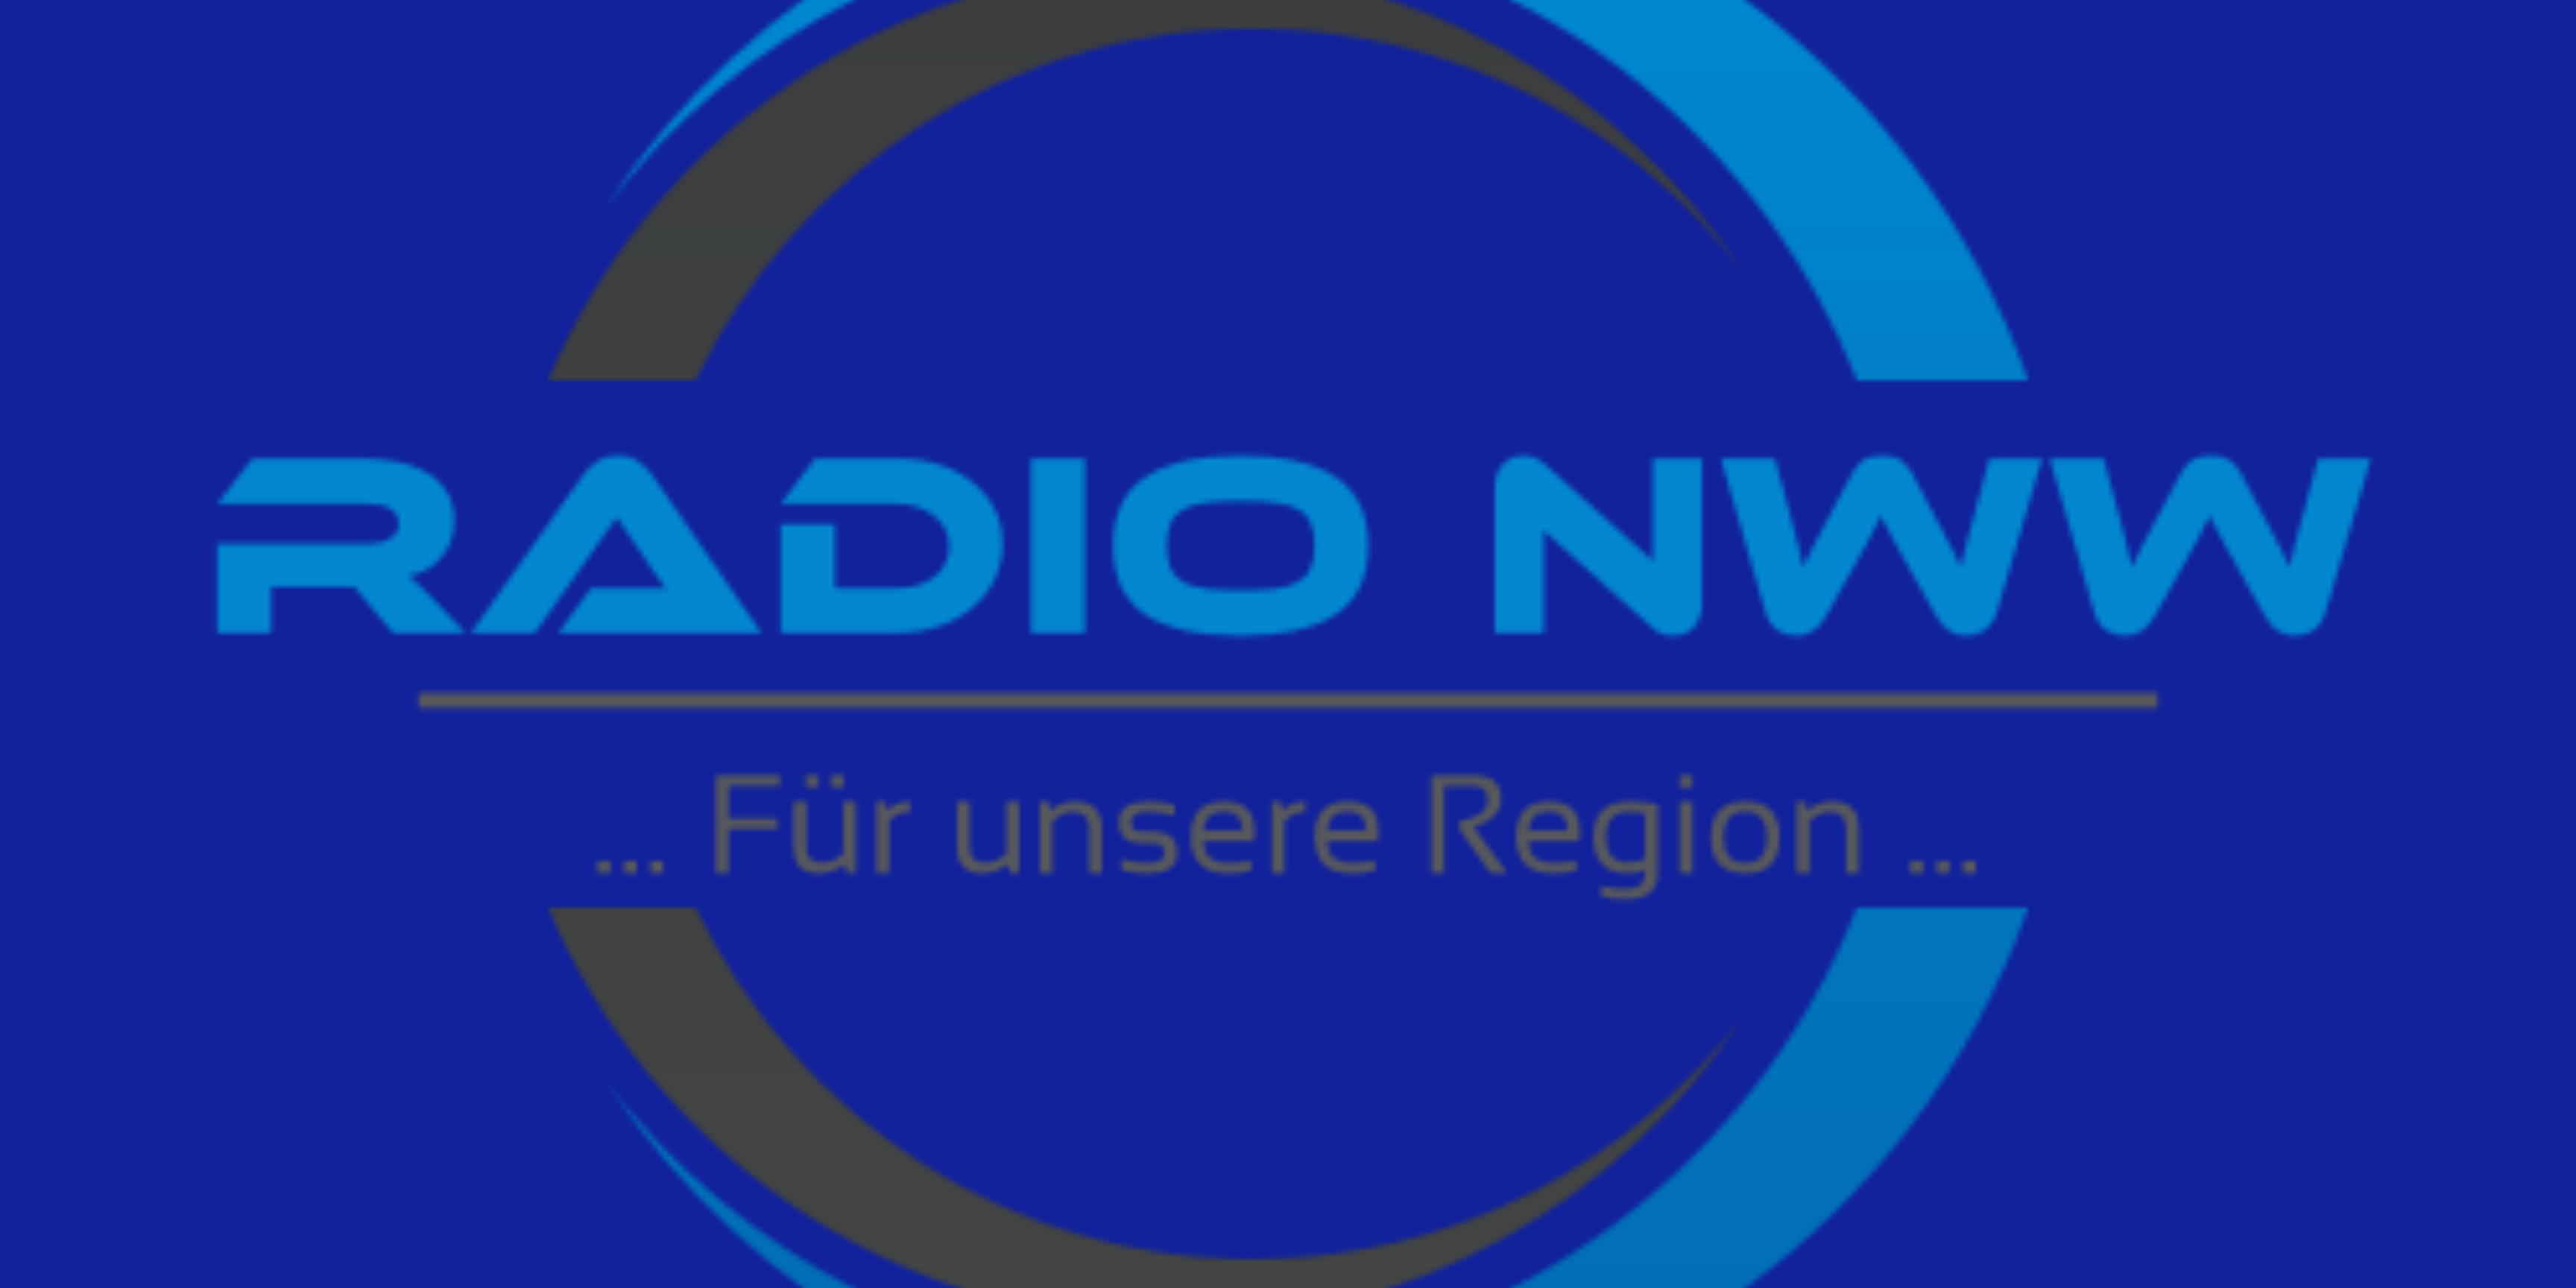 Das Radio NWW-Logo auf blauem Hintergrund